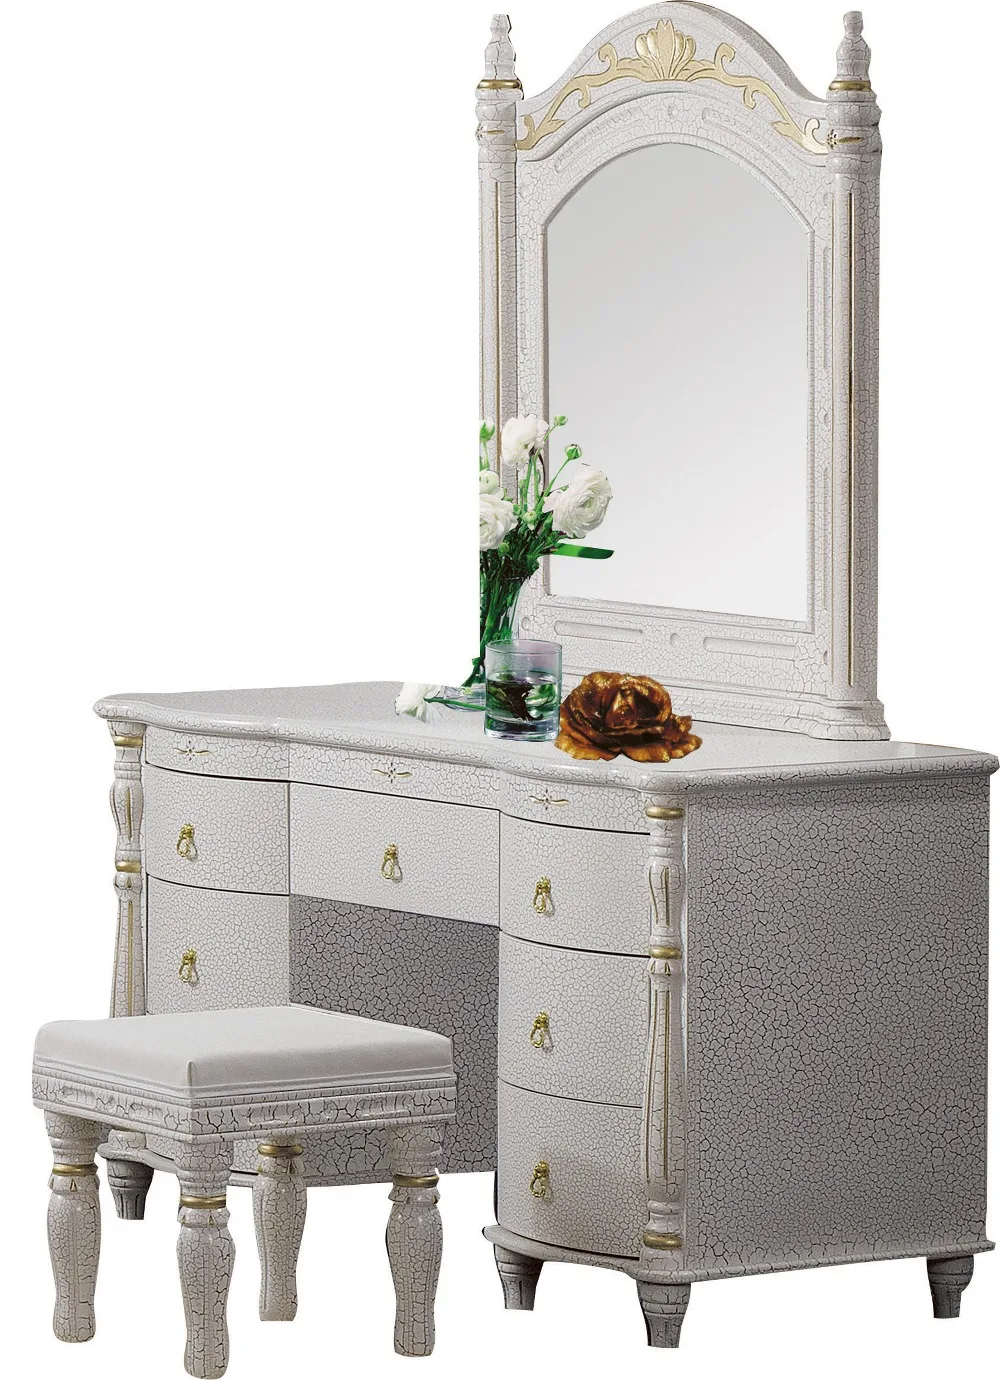 Спальня домашняя мебель туалетный столик стол с 7 Ящики с зеркалом и табурет современный стиль KD упакованные деревянные резные материалы